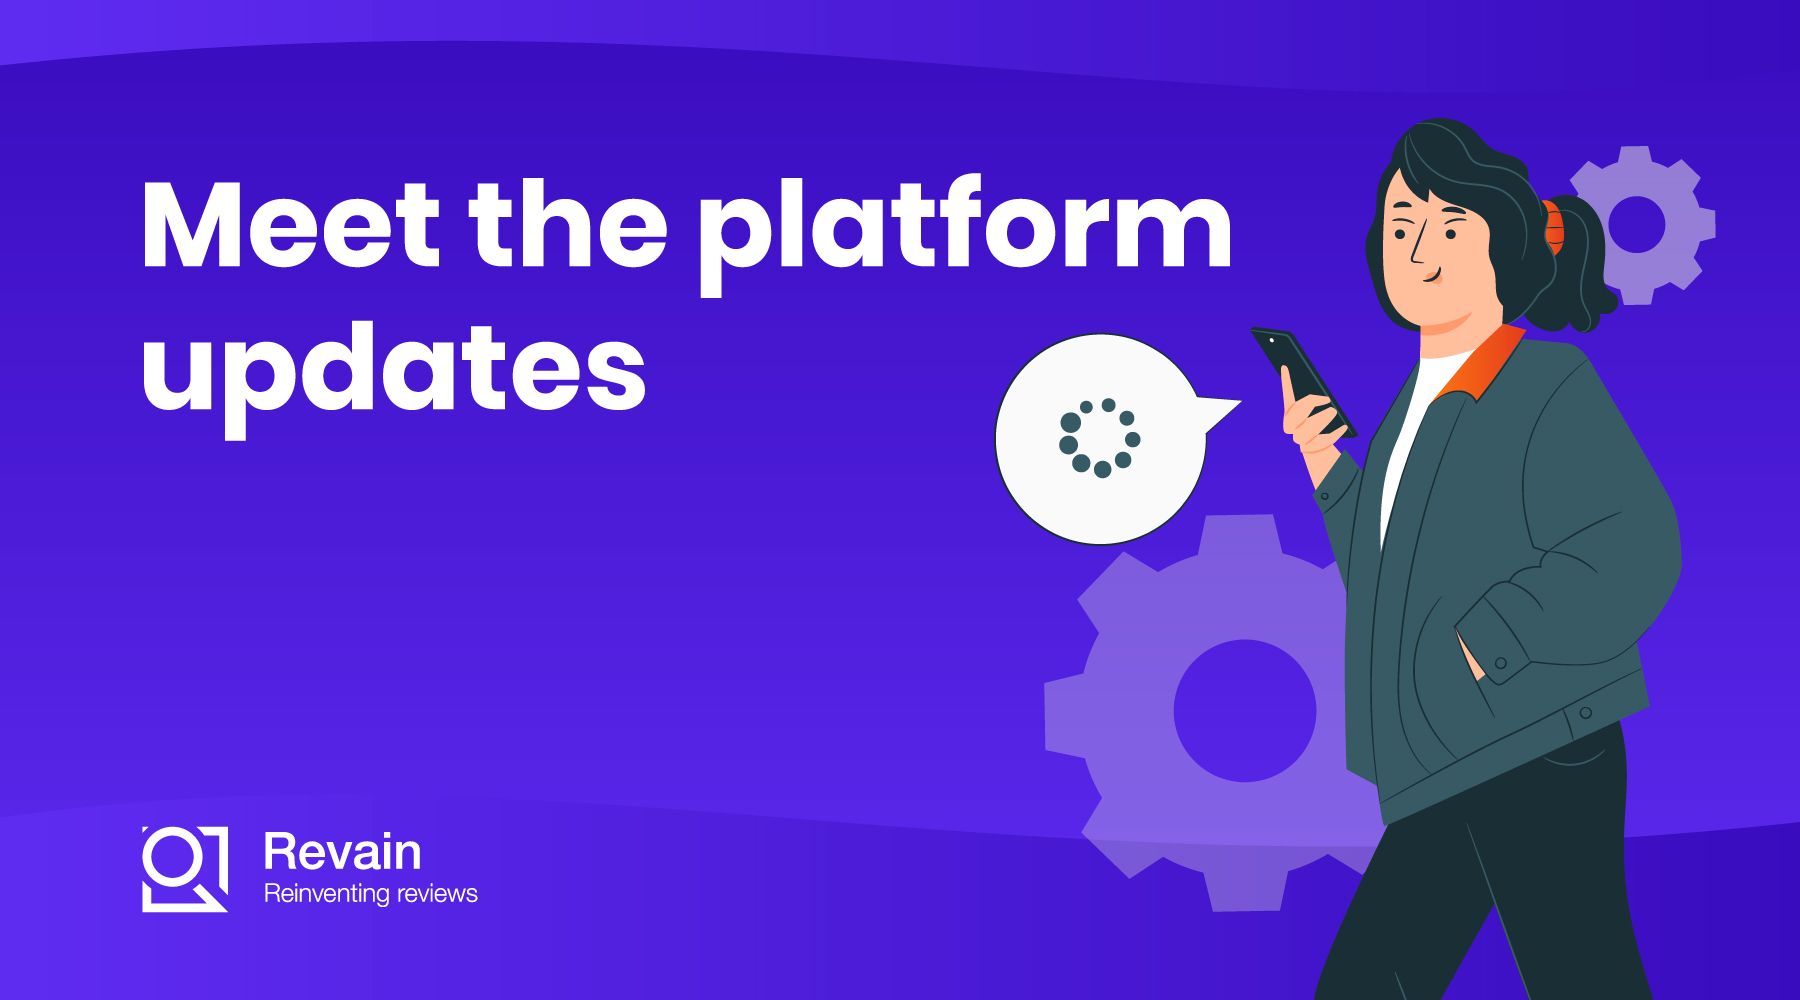 Revainers, meet the platform updates!